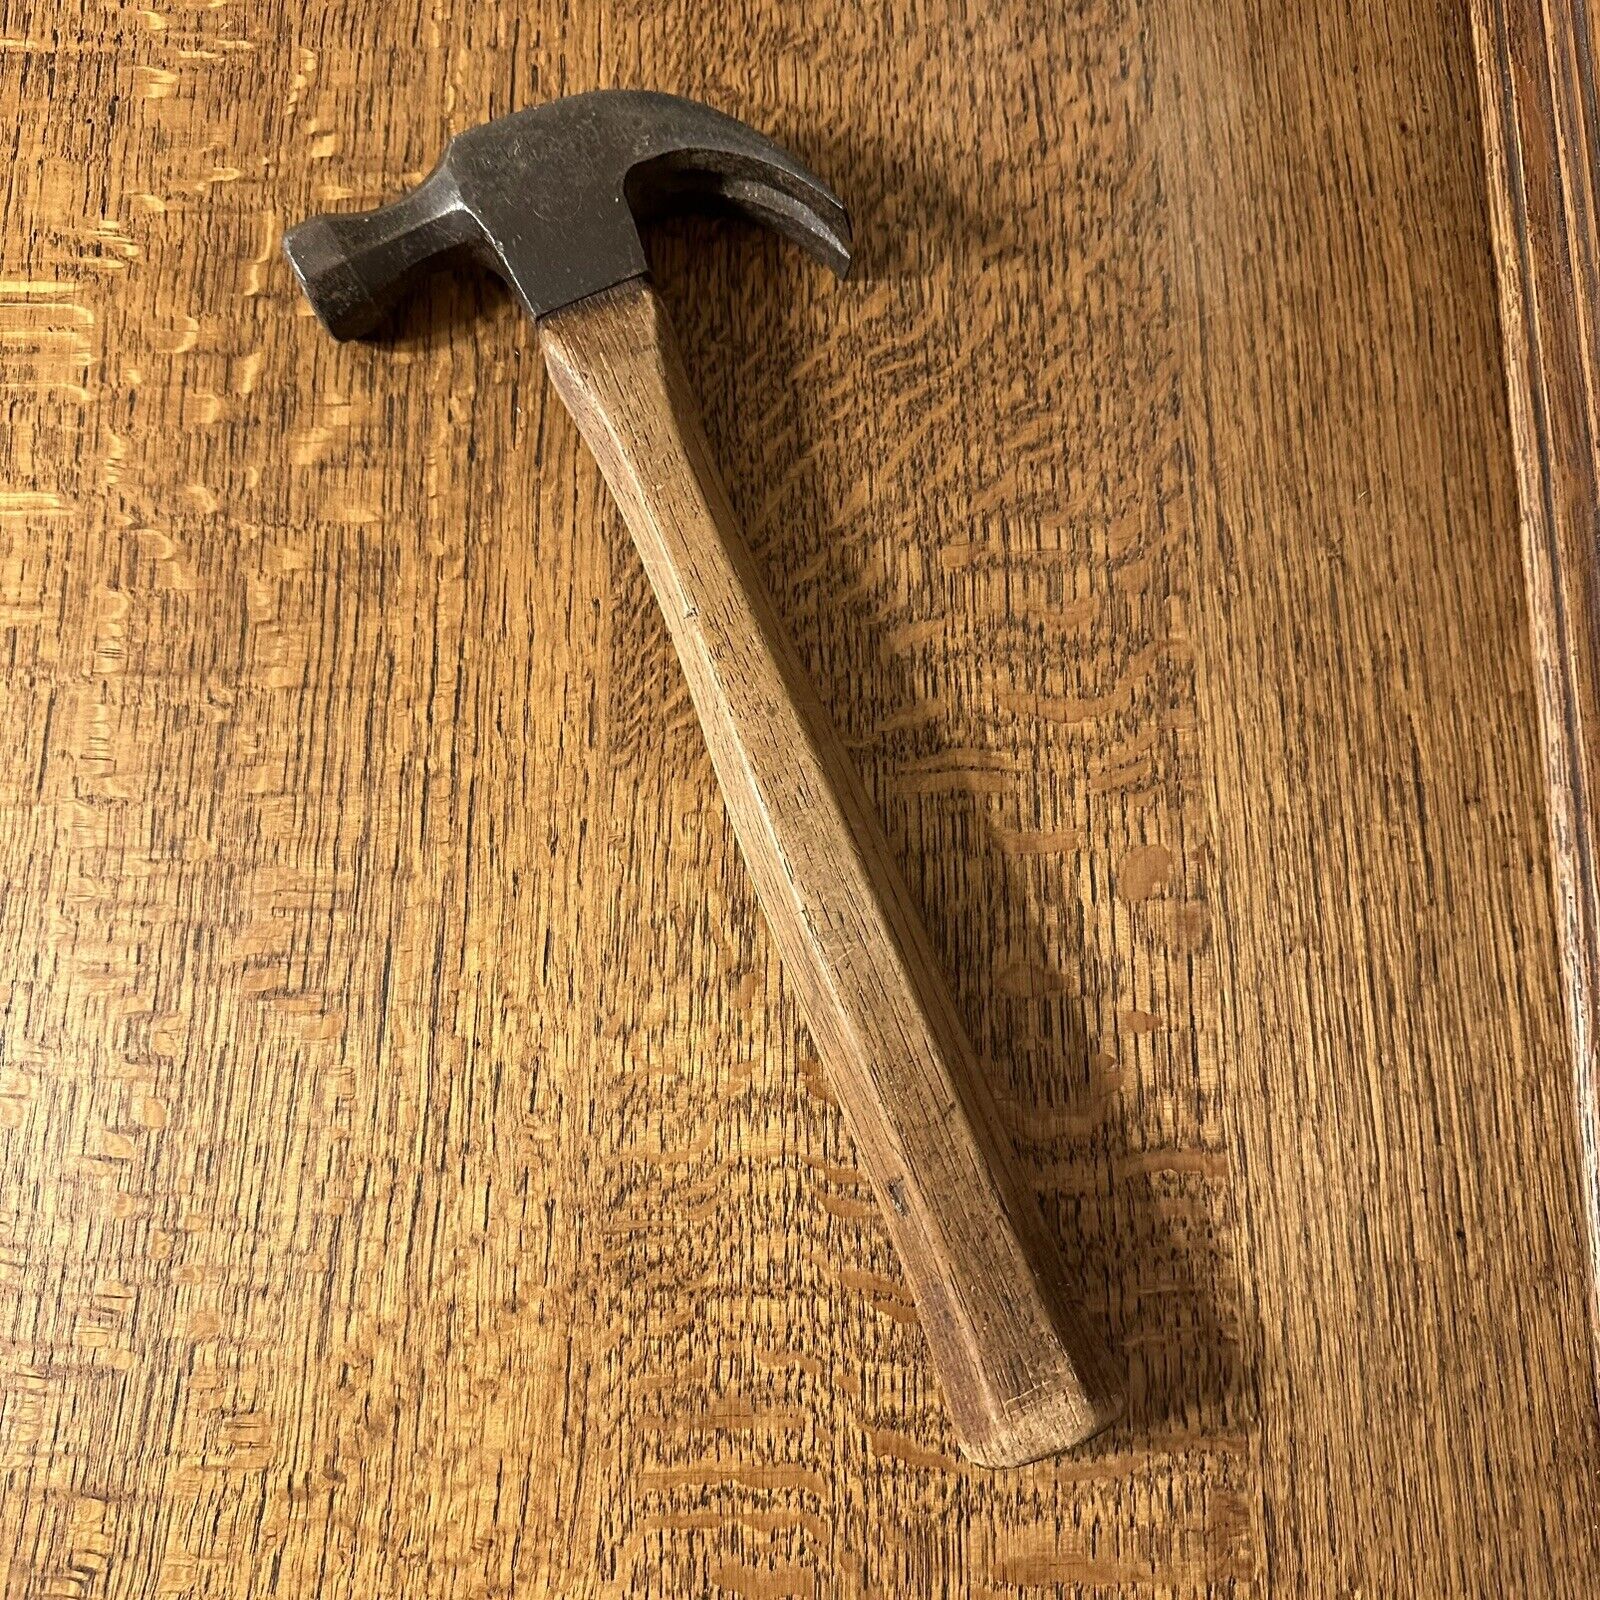 Belknap Bluegrass Claw Hammer Blue Grass Carpenter\'s Wood Handle Weight 1.6 LBS